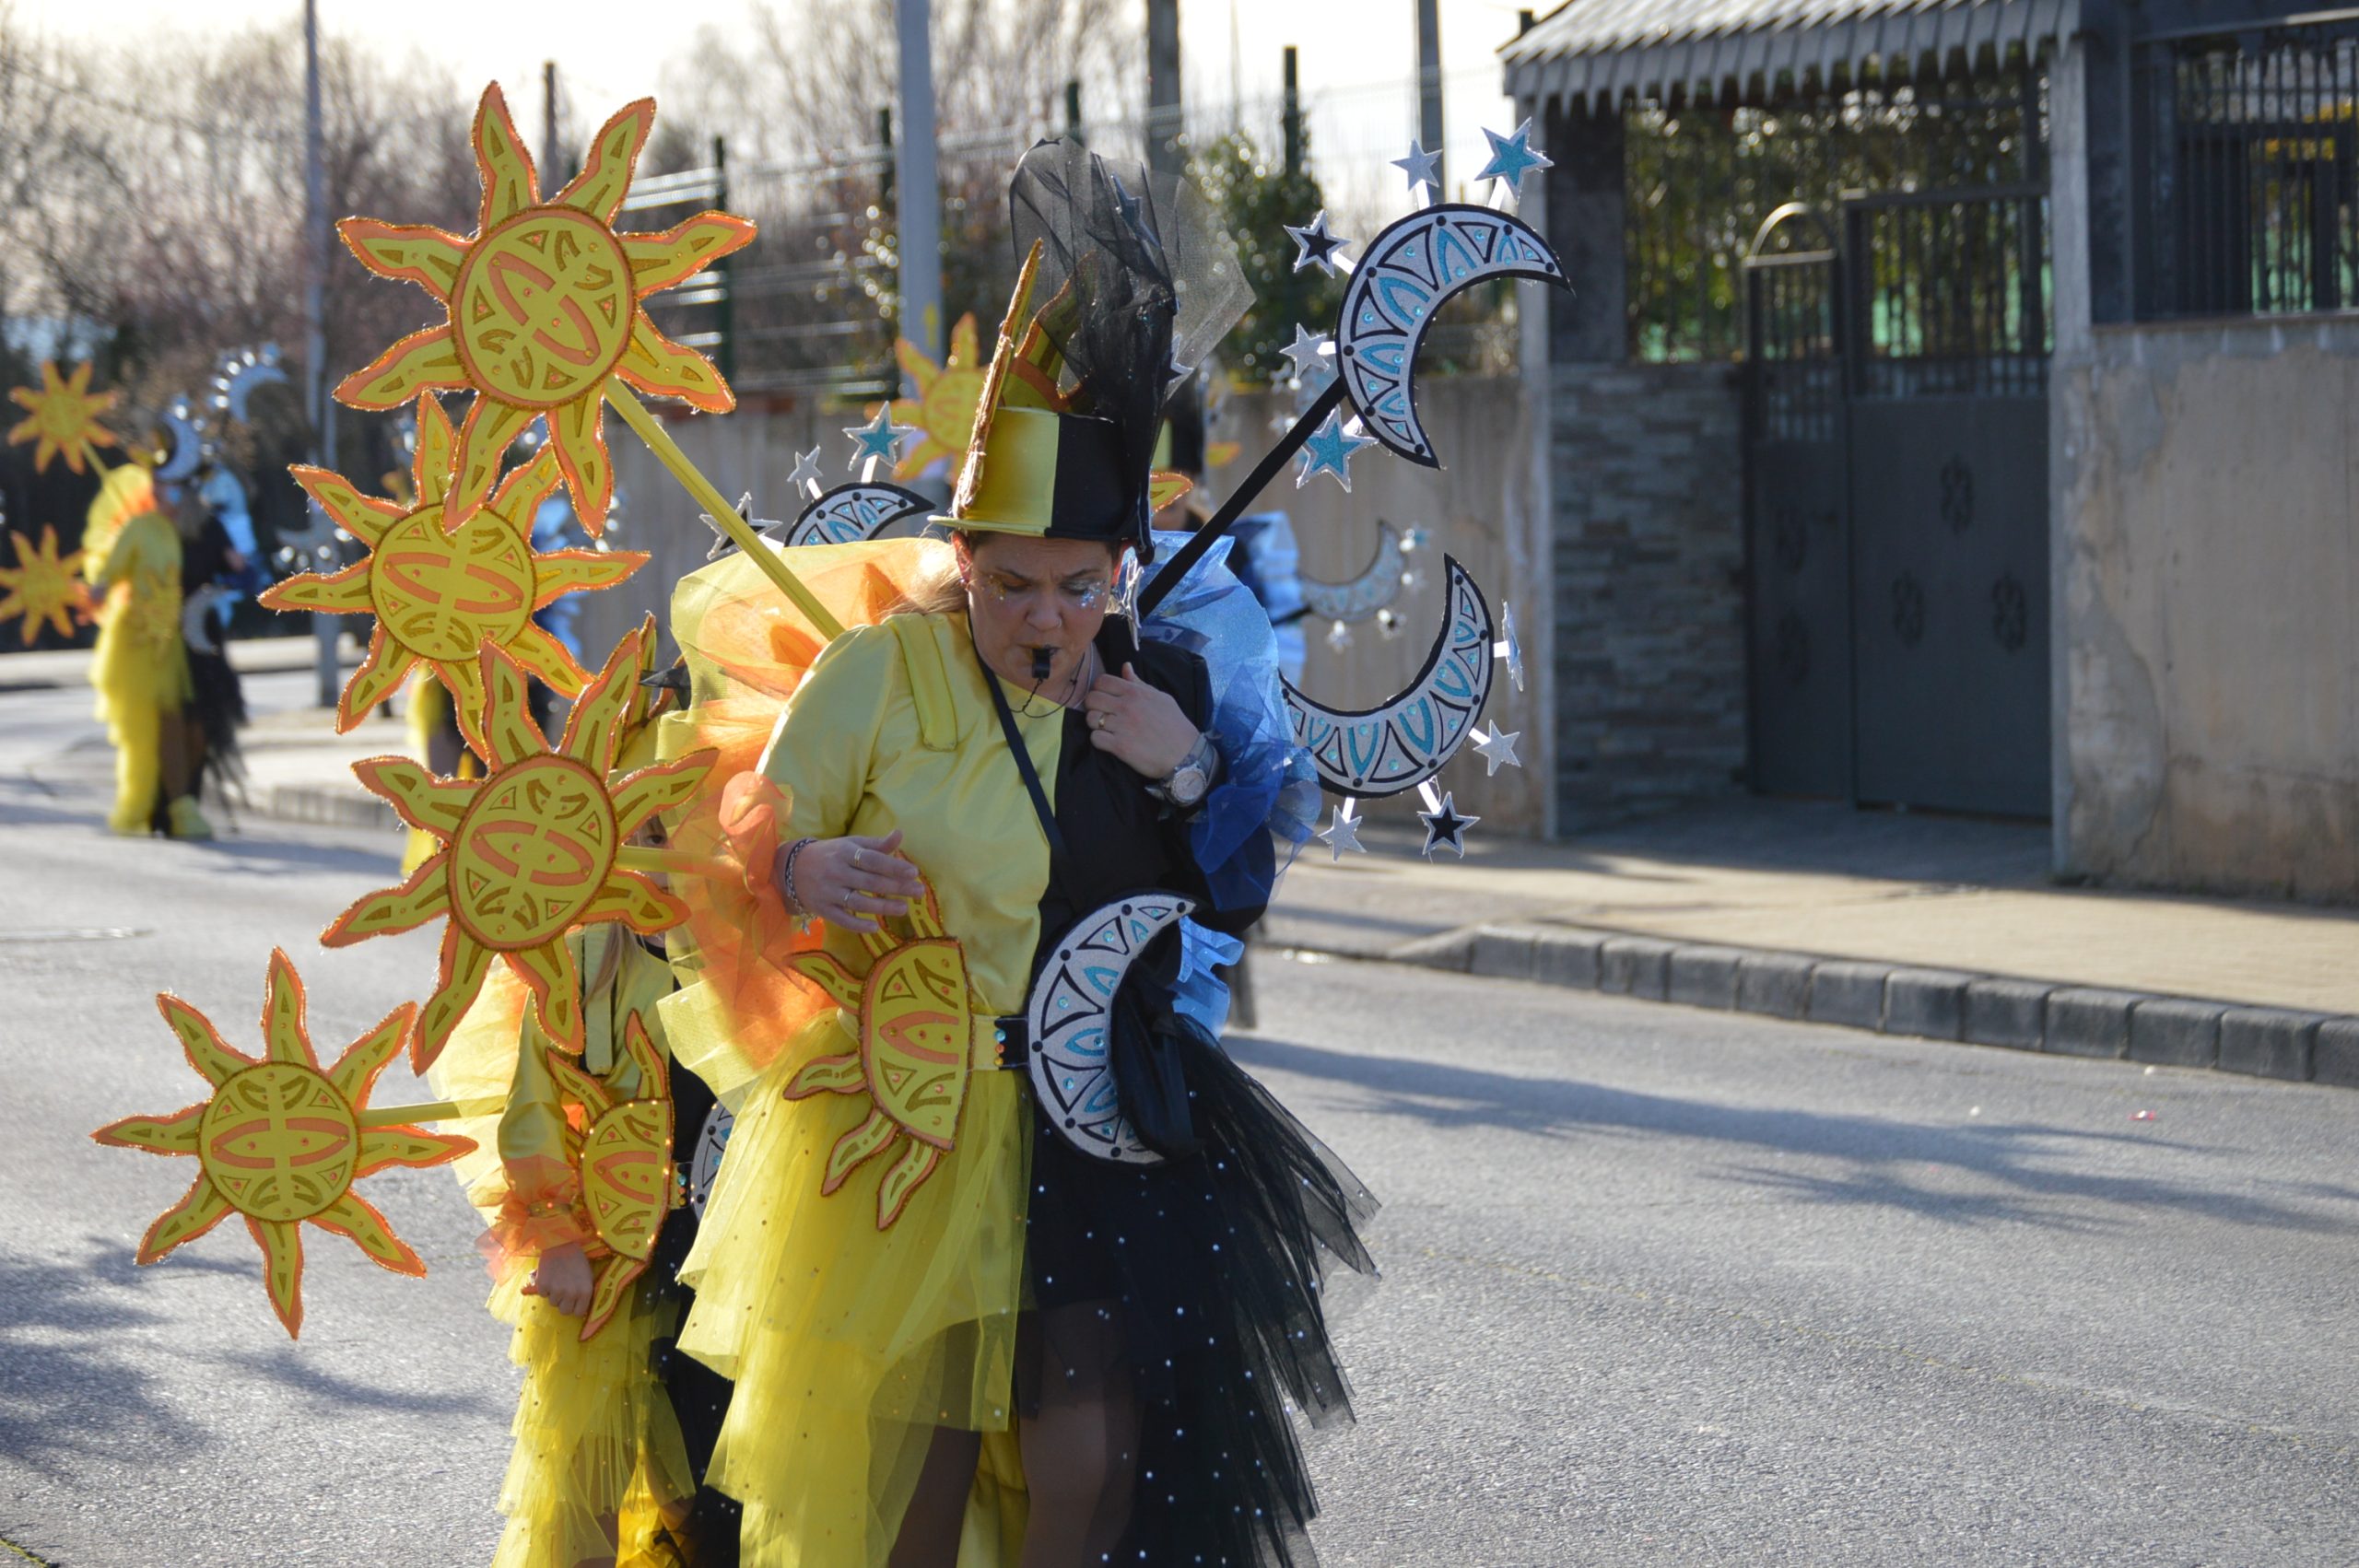 La alegría del Carnaval recorre Cubillos del Sil bajo un sol casi-primaveral 68